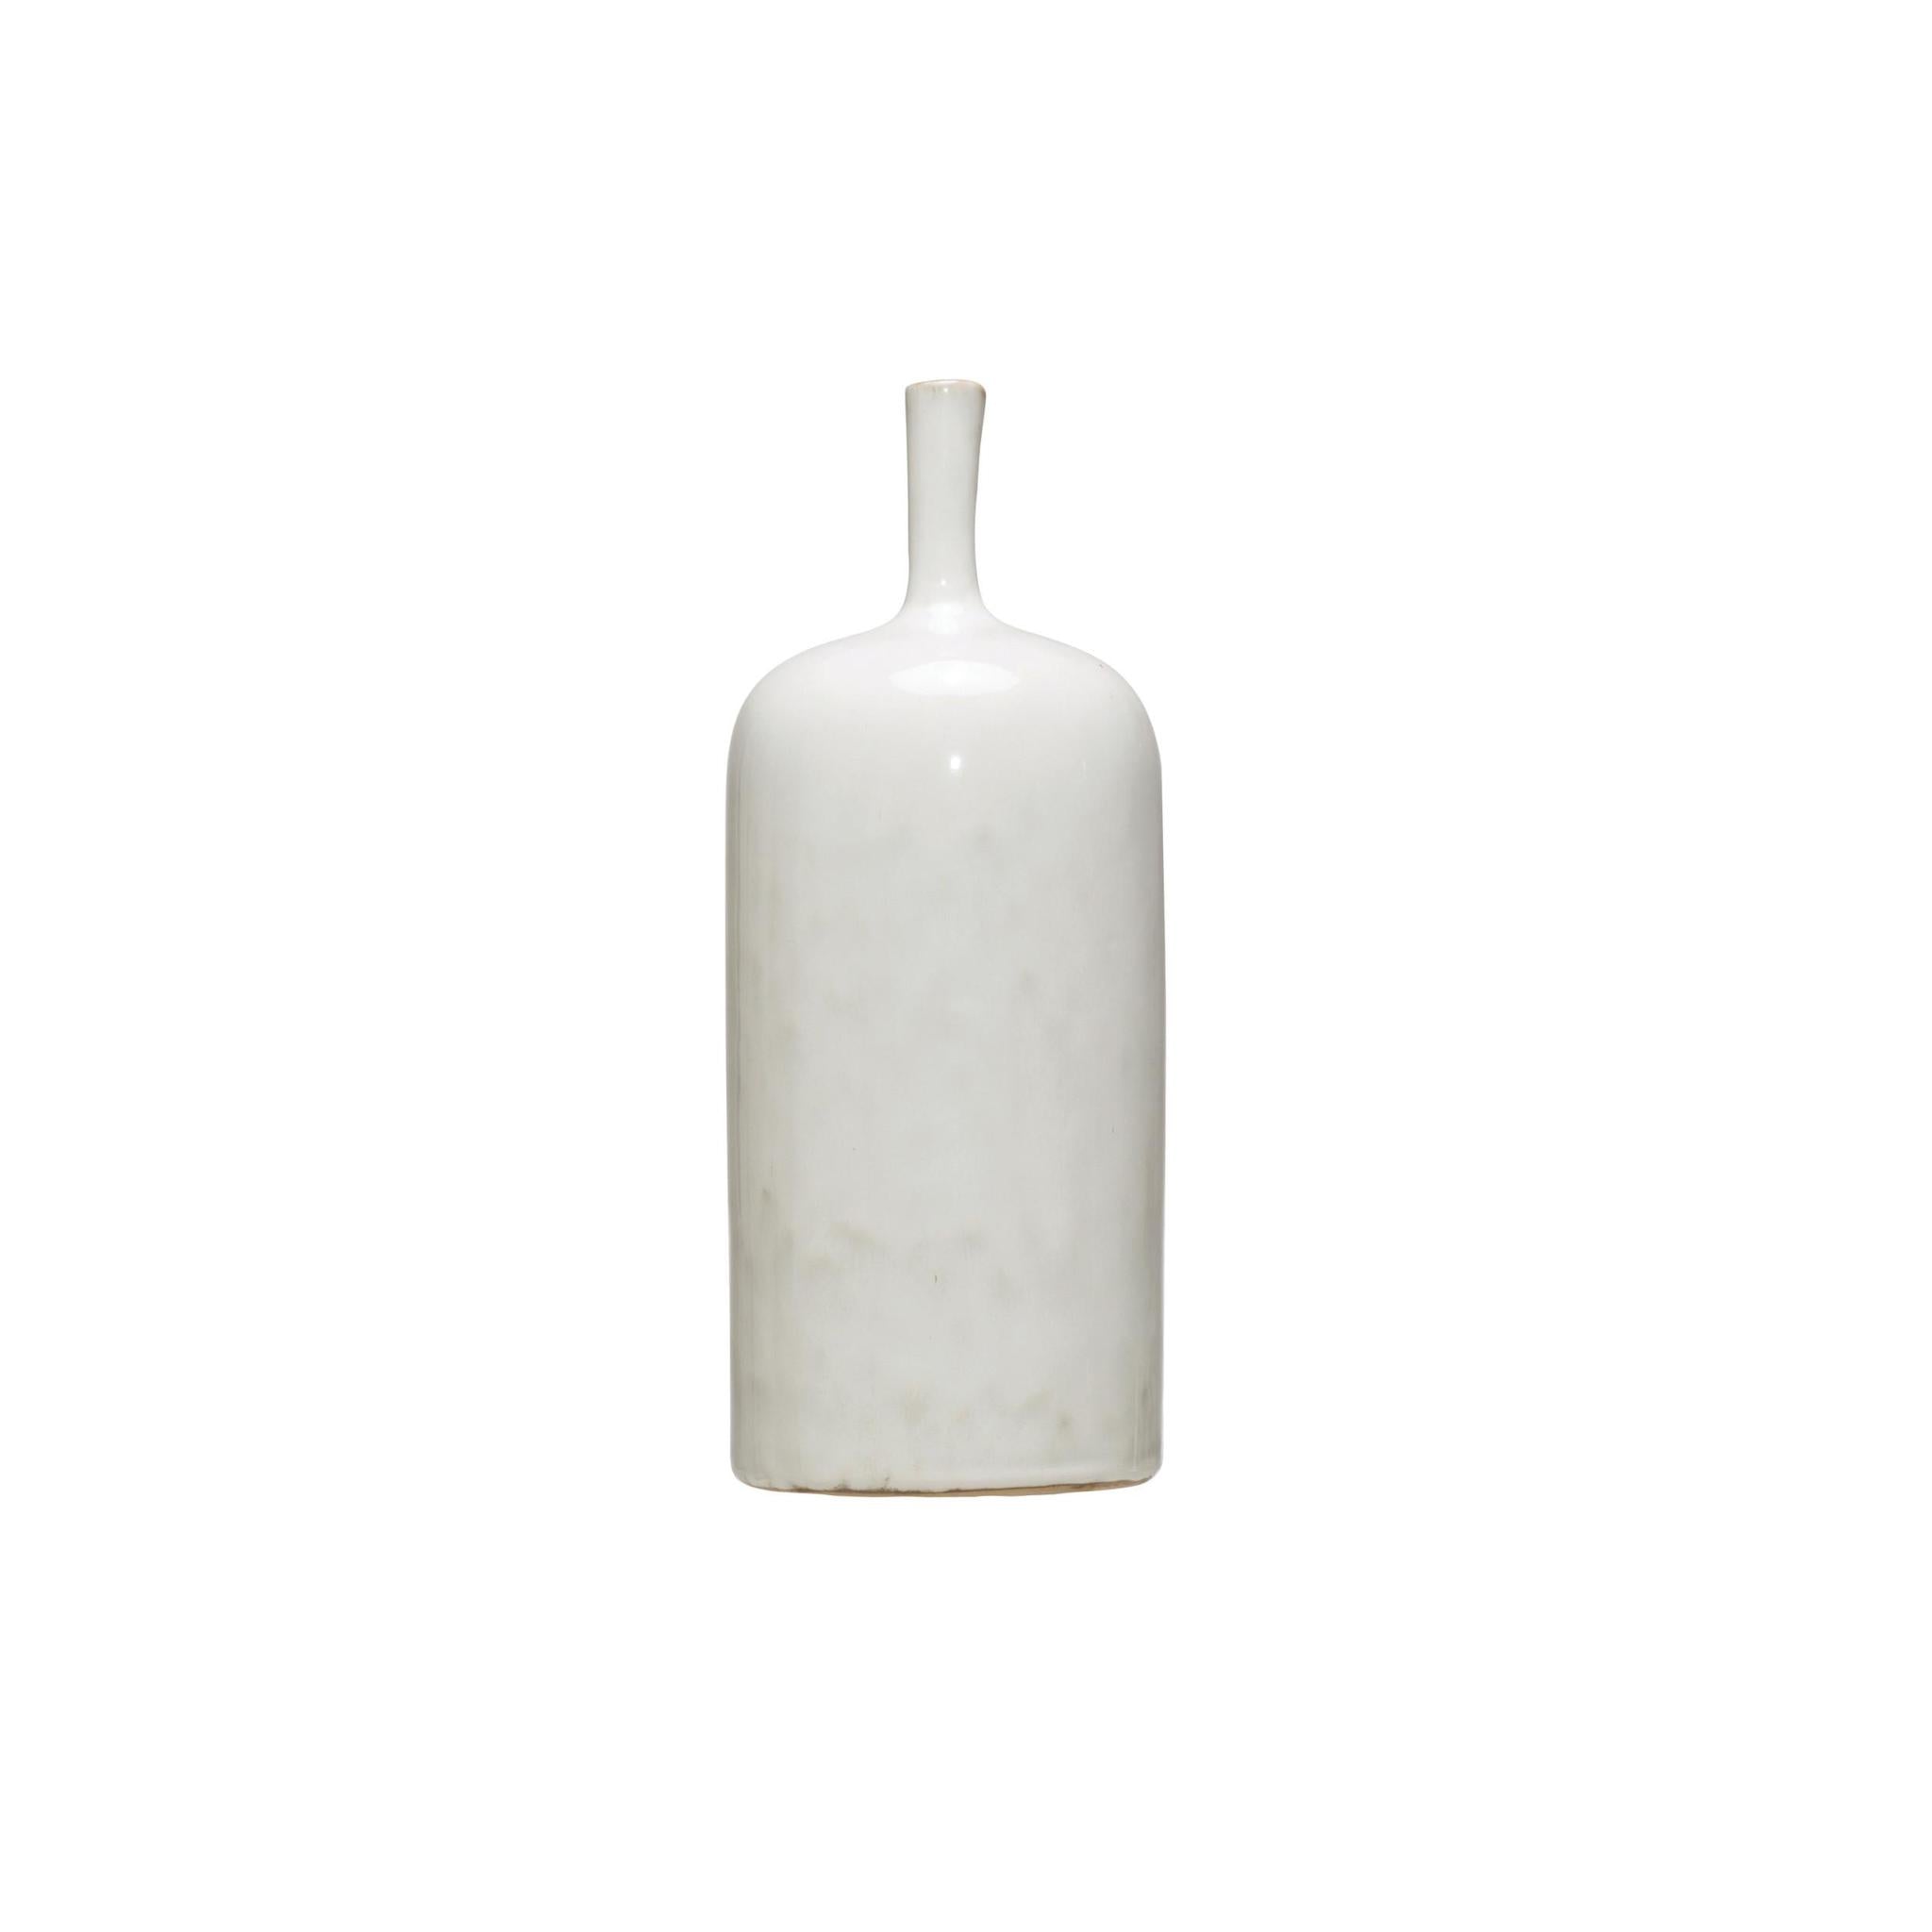 Stoneware vase w/ Thin Neck - White